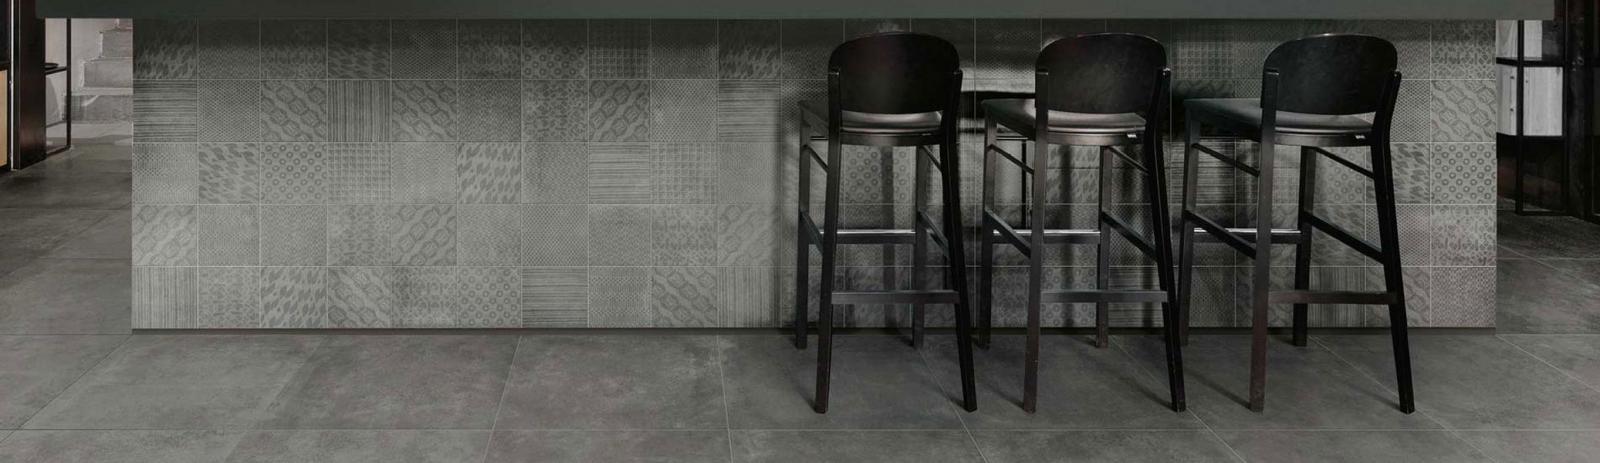 banner-midtown-concrete-look-floor-wall-tile-unicom-starker-1900x550